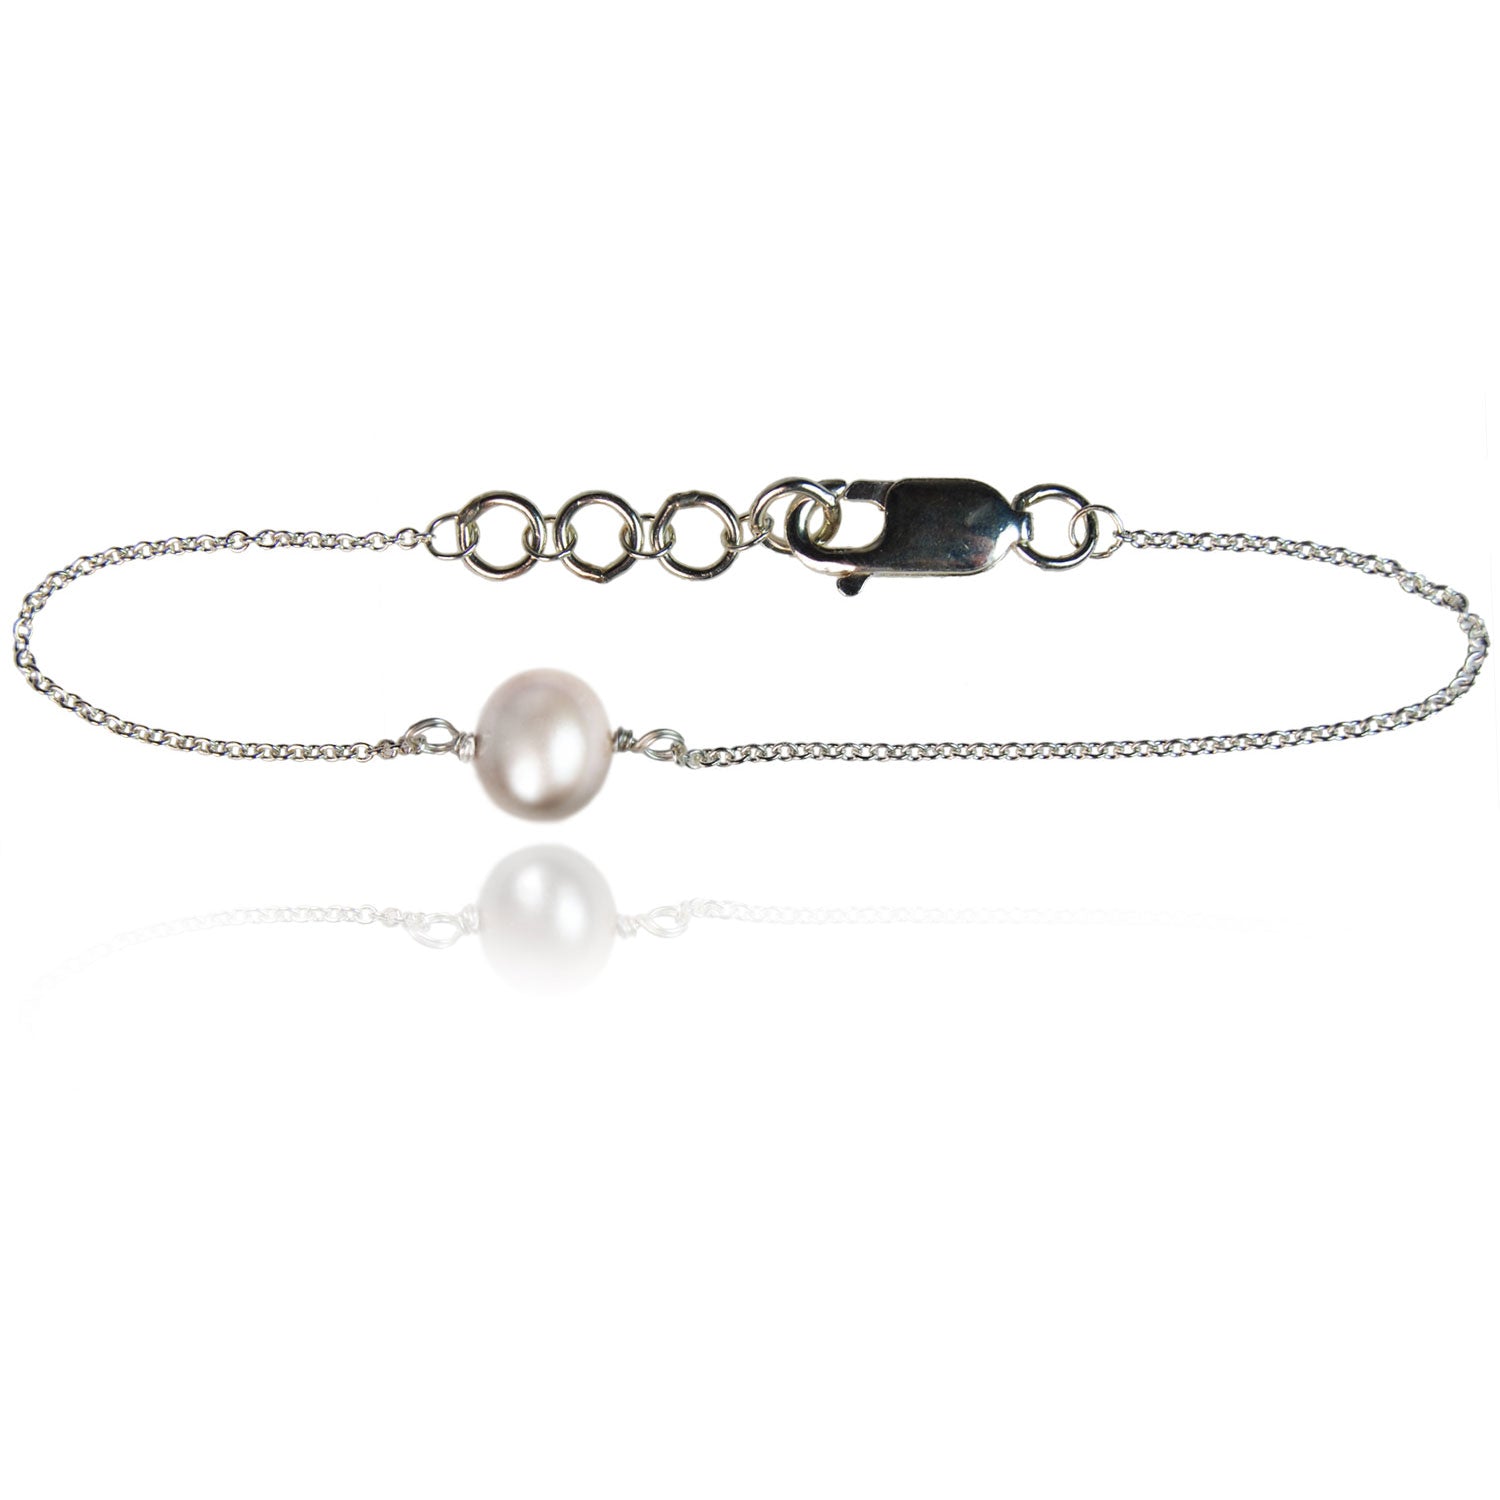 Joyful White Pearl Sterling Silver Chain Bracelet